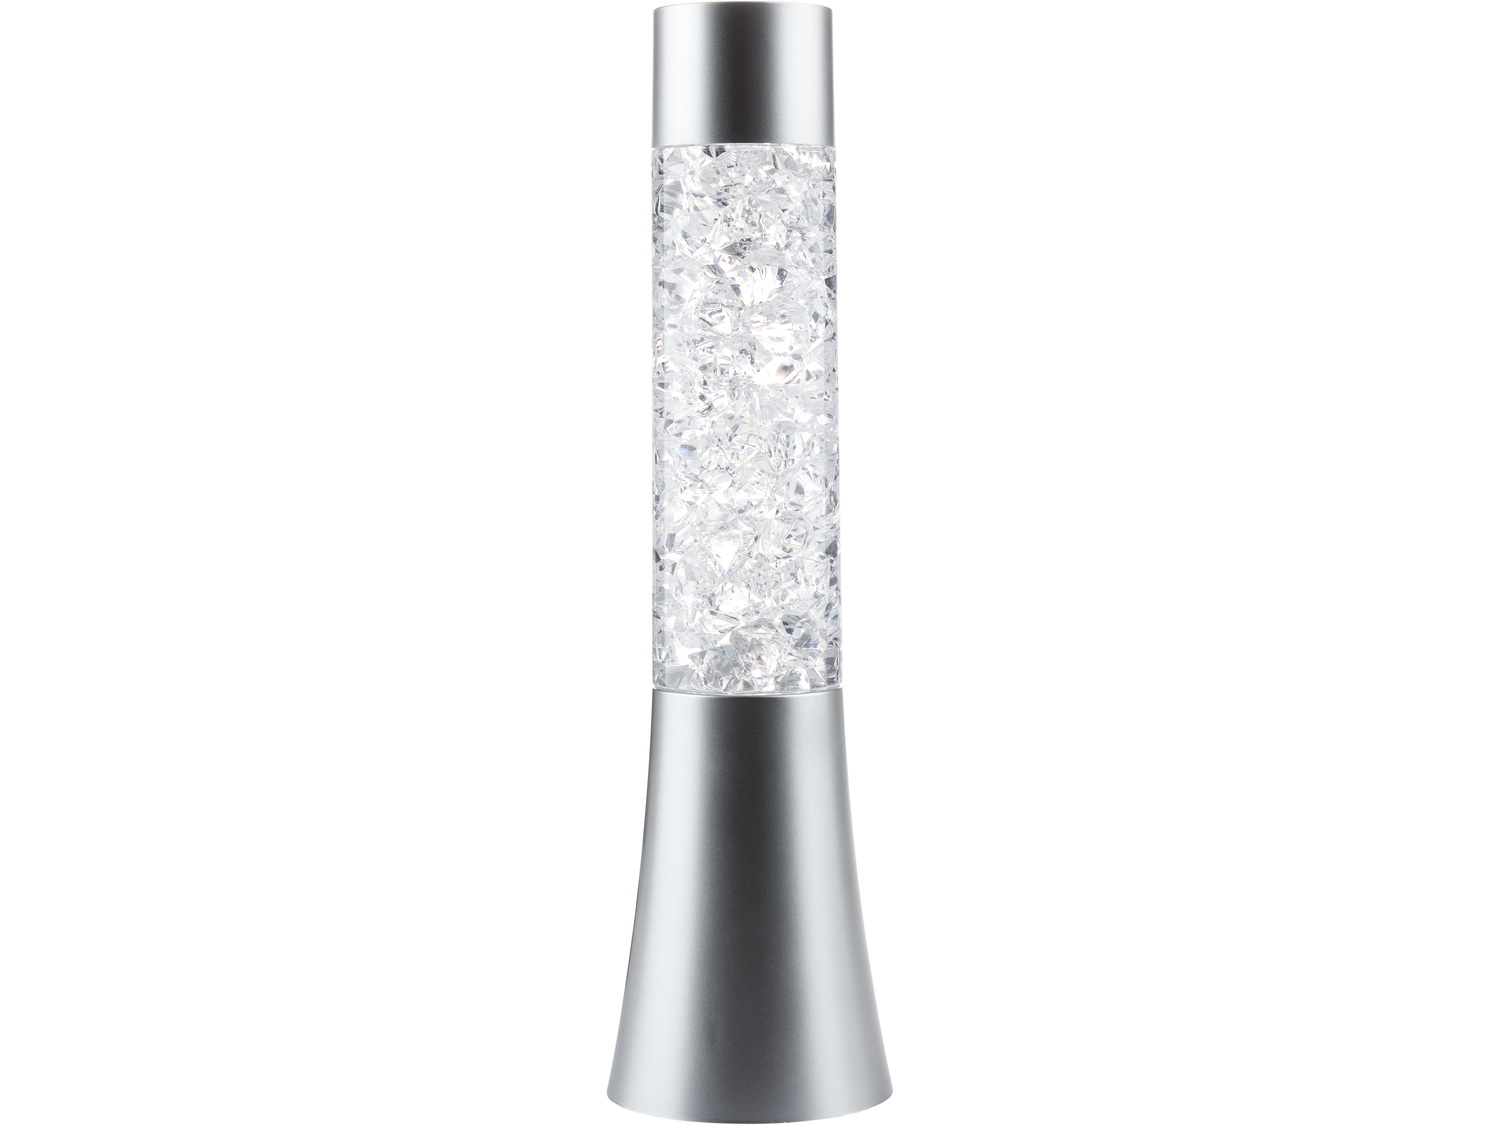 Dekoracyjna lampka stołowa Melinera, cena 39,99 PLN 
4 wzory 
- 6-godzinny timer
- ...